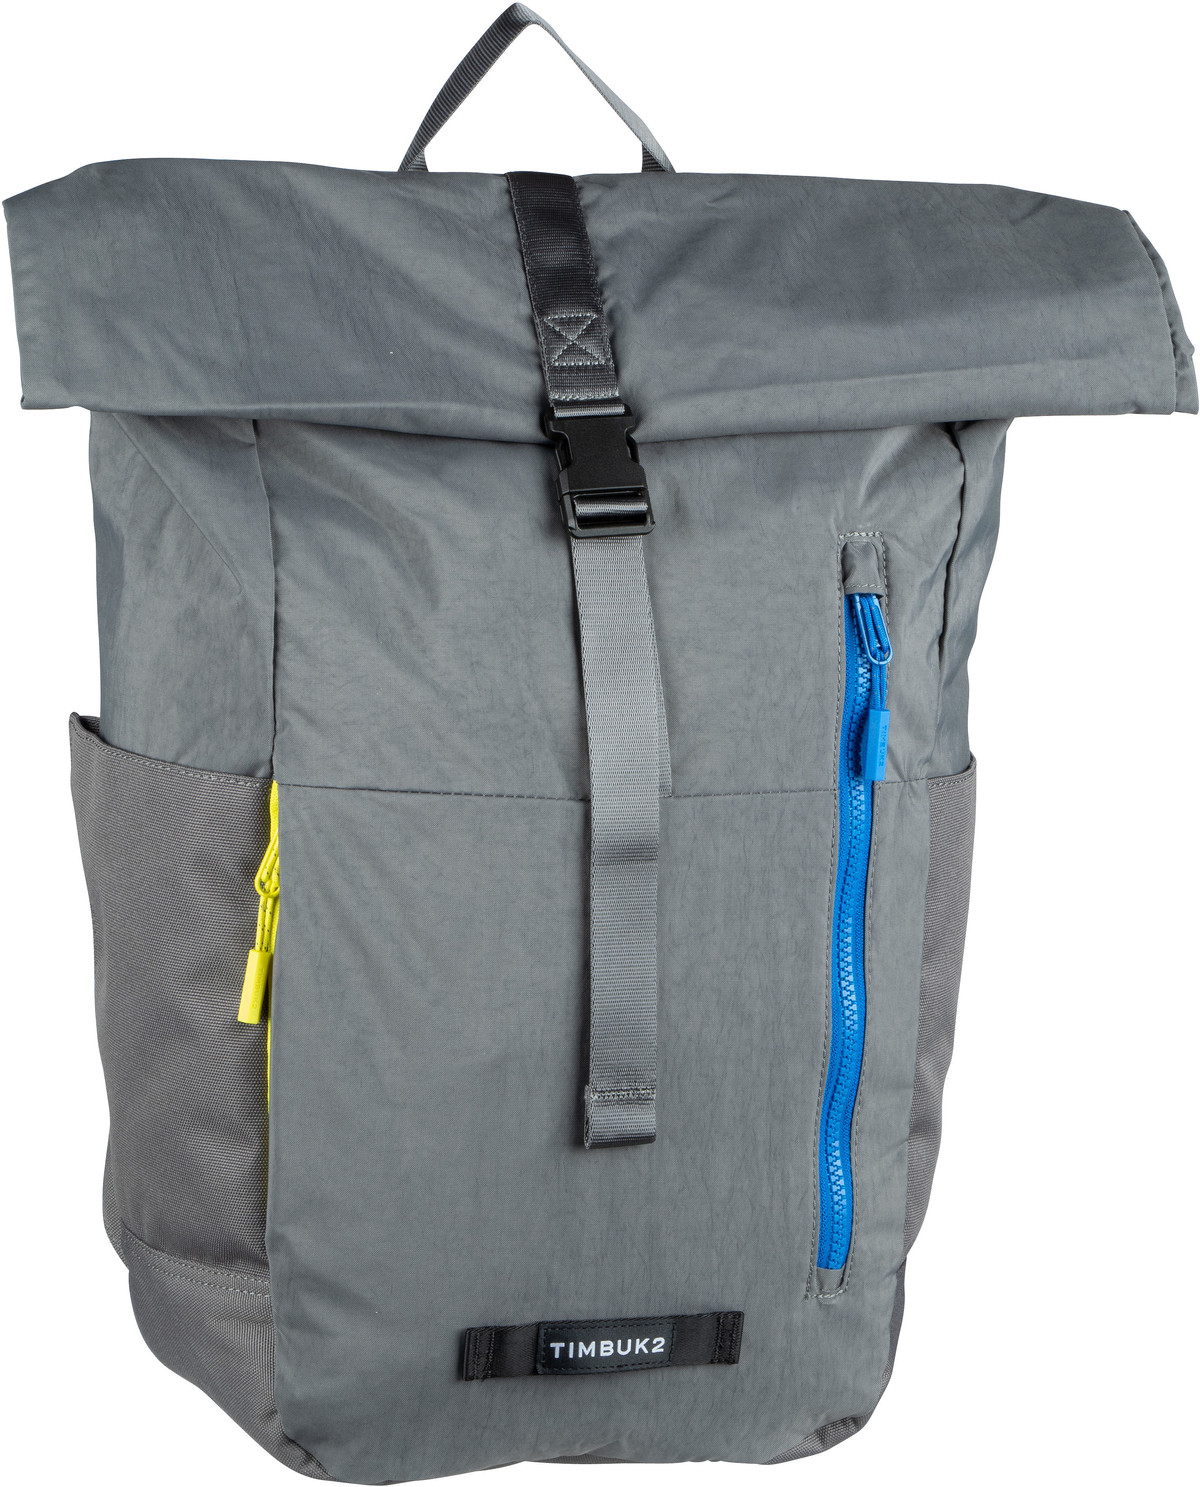 Timbuk2 Timbuk2 Tuck Backpack Eco in Grau (23 Liter), Rucksack / Backpack